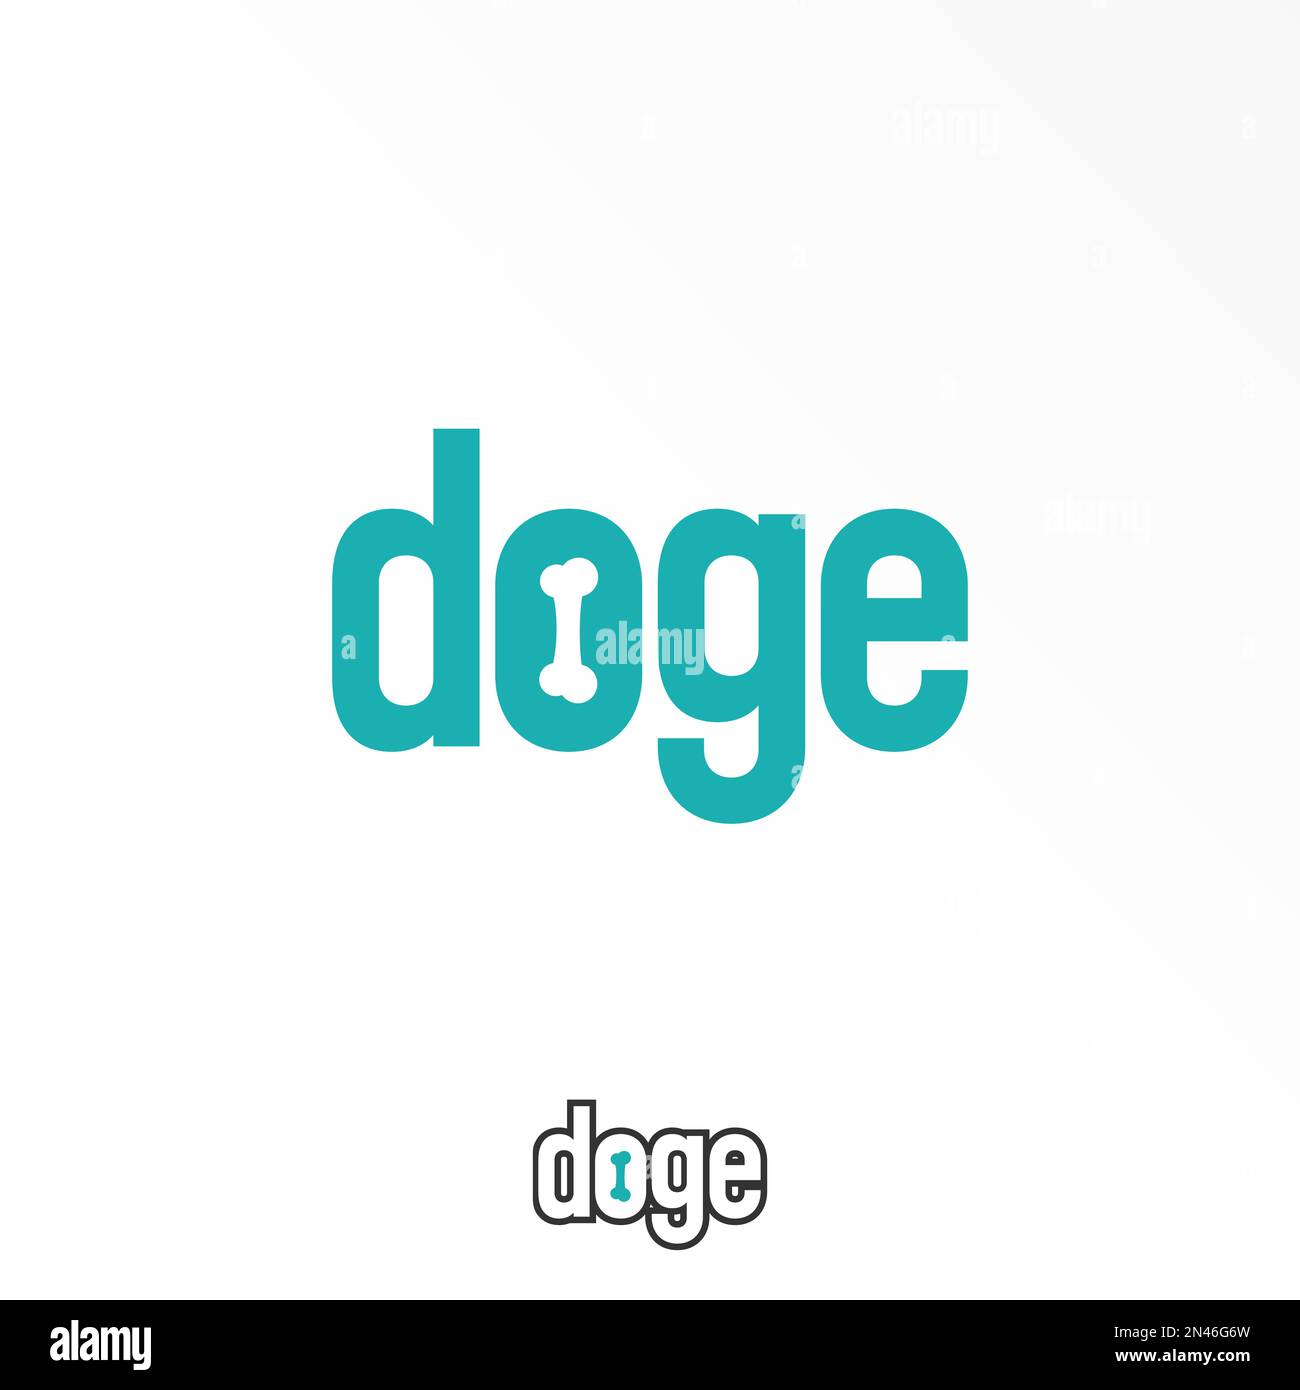 Buchstabe oder Wort DOGE ohne serifenfarbene Schrift mit Grafiksymbol für Knochen Logo Design abstraktes Konzept Vektormaterial. Wird als Symbol für Hund oder Initialen verwendet Stock Vektor